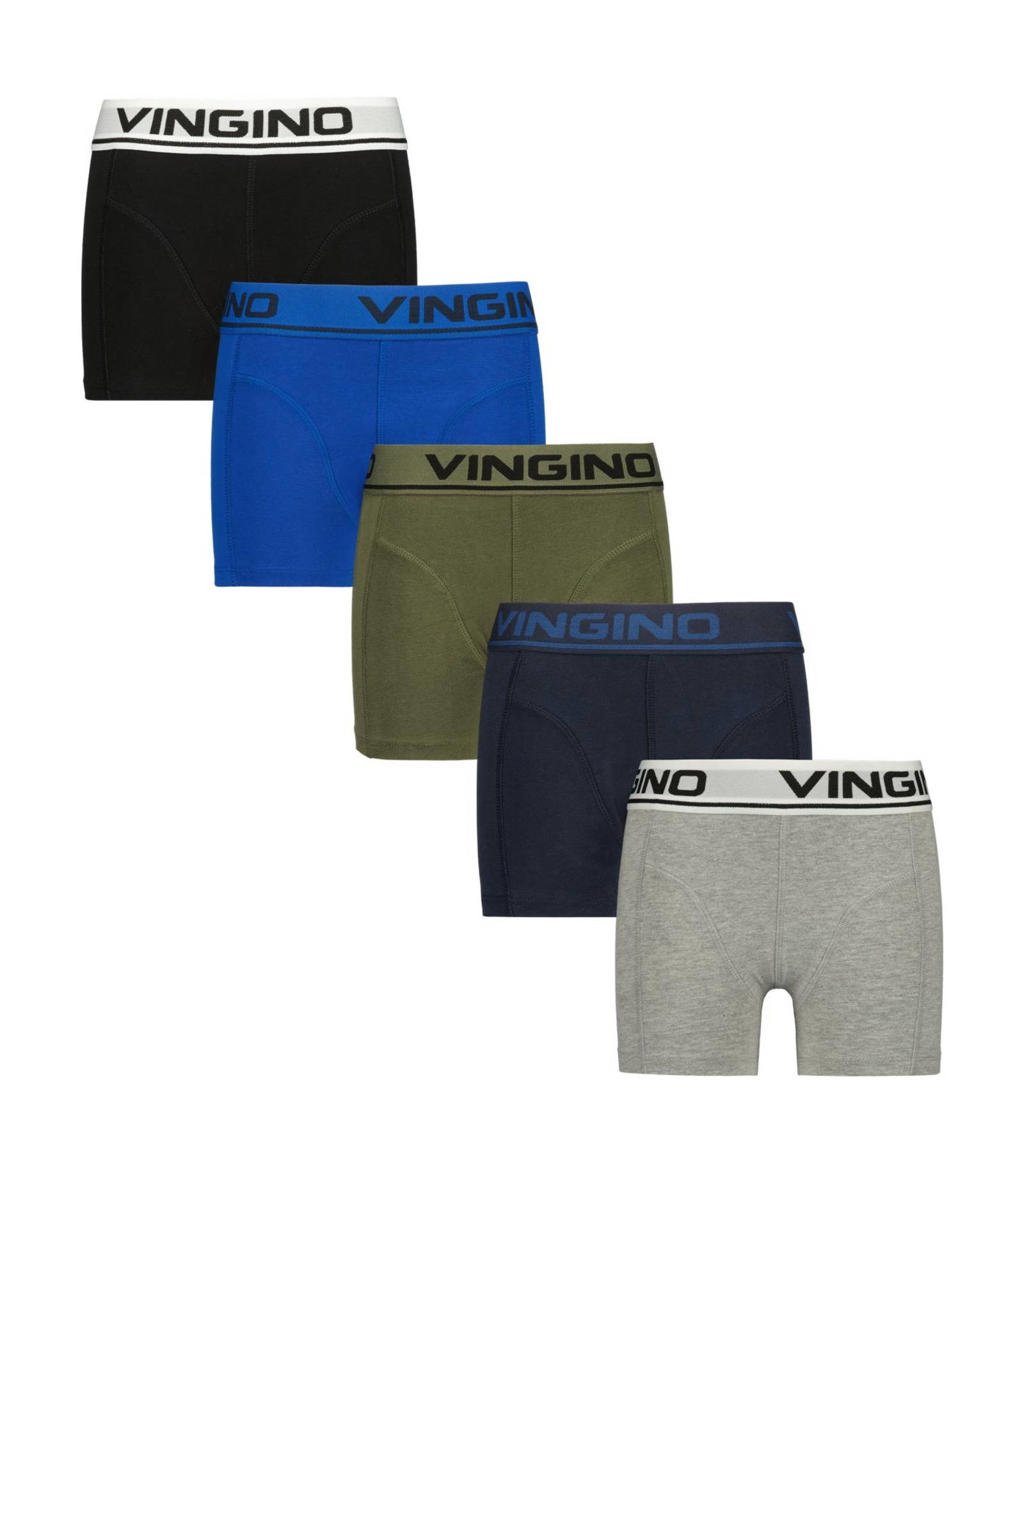 Vingino   boxershort - set van 5 grijs/blauw/zwart